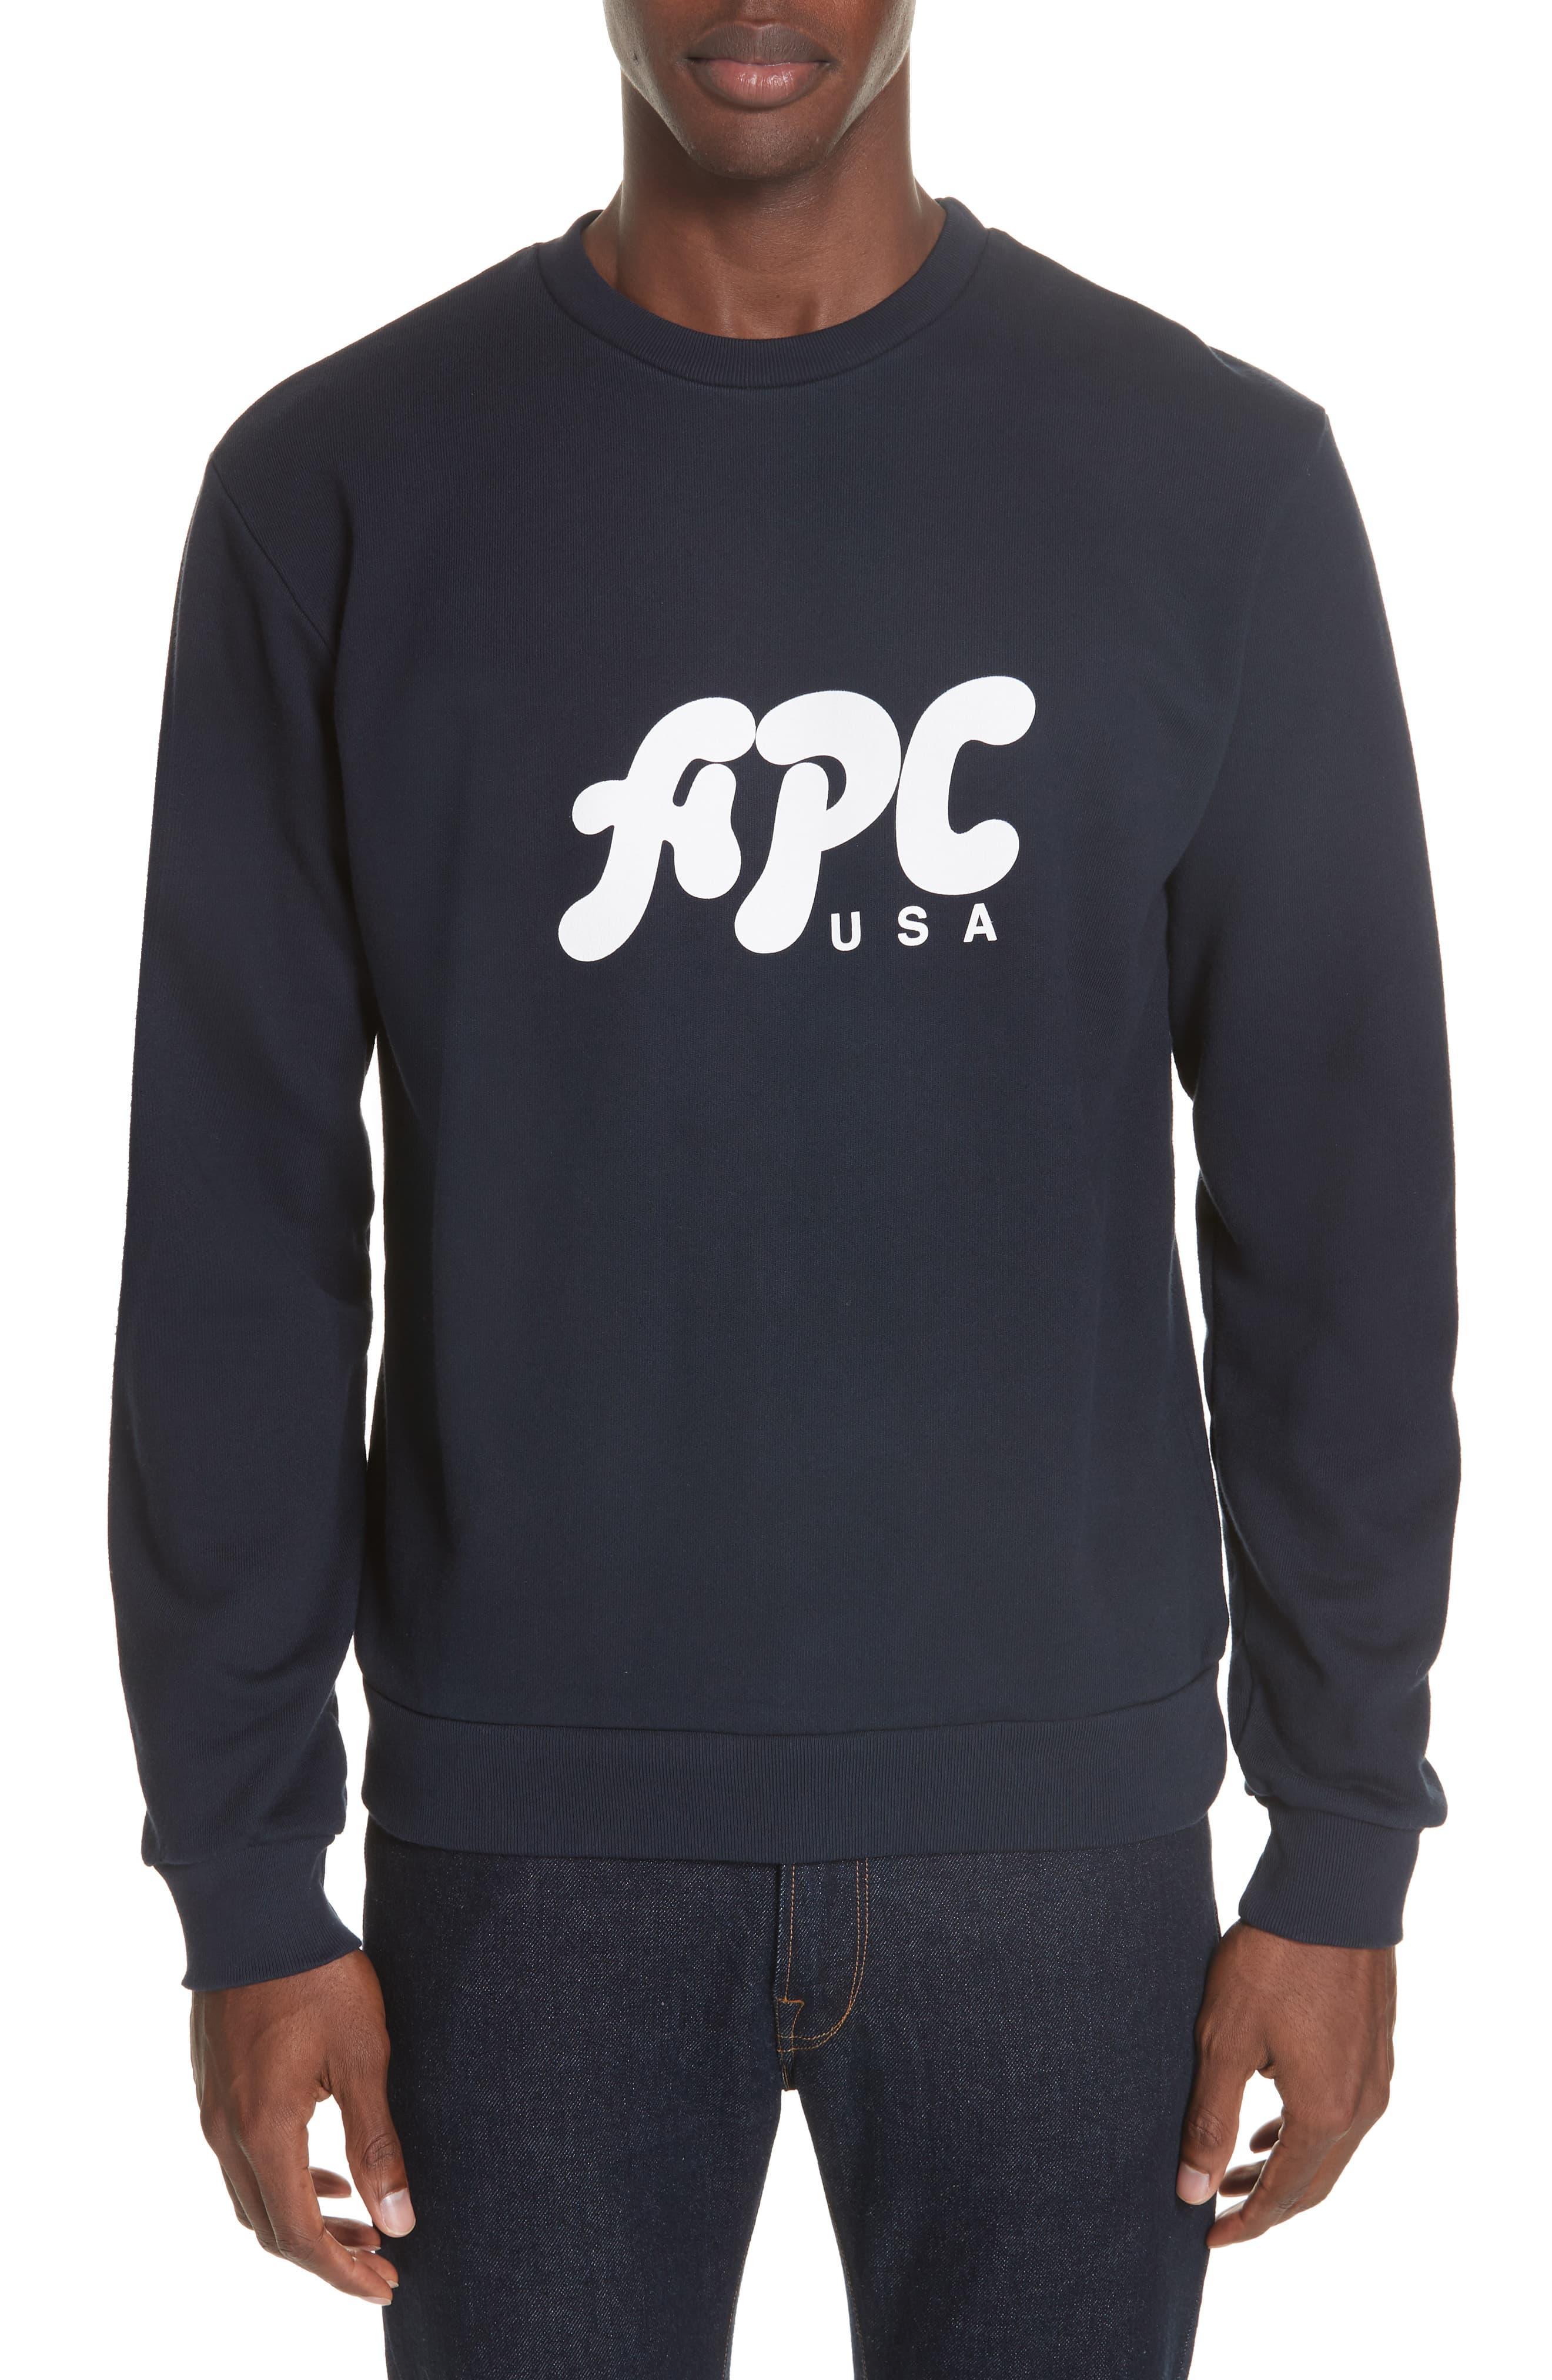 A.P.C. Cotton Logo Crew-neck Sweatshirt in Dark Navy (Blue) for Men - Lyst